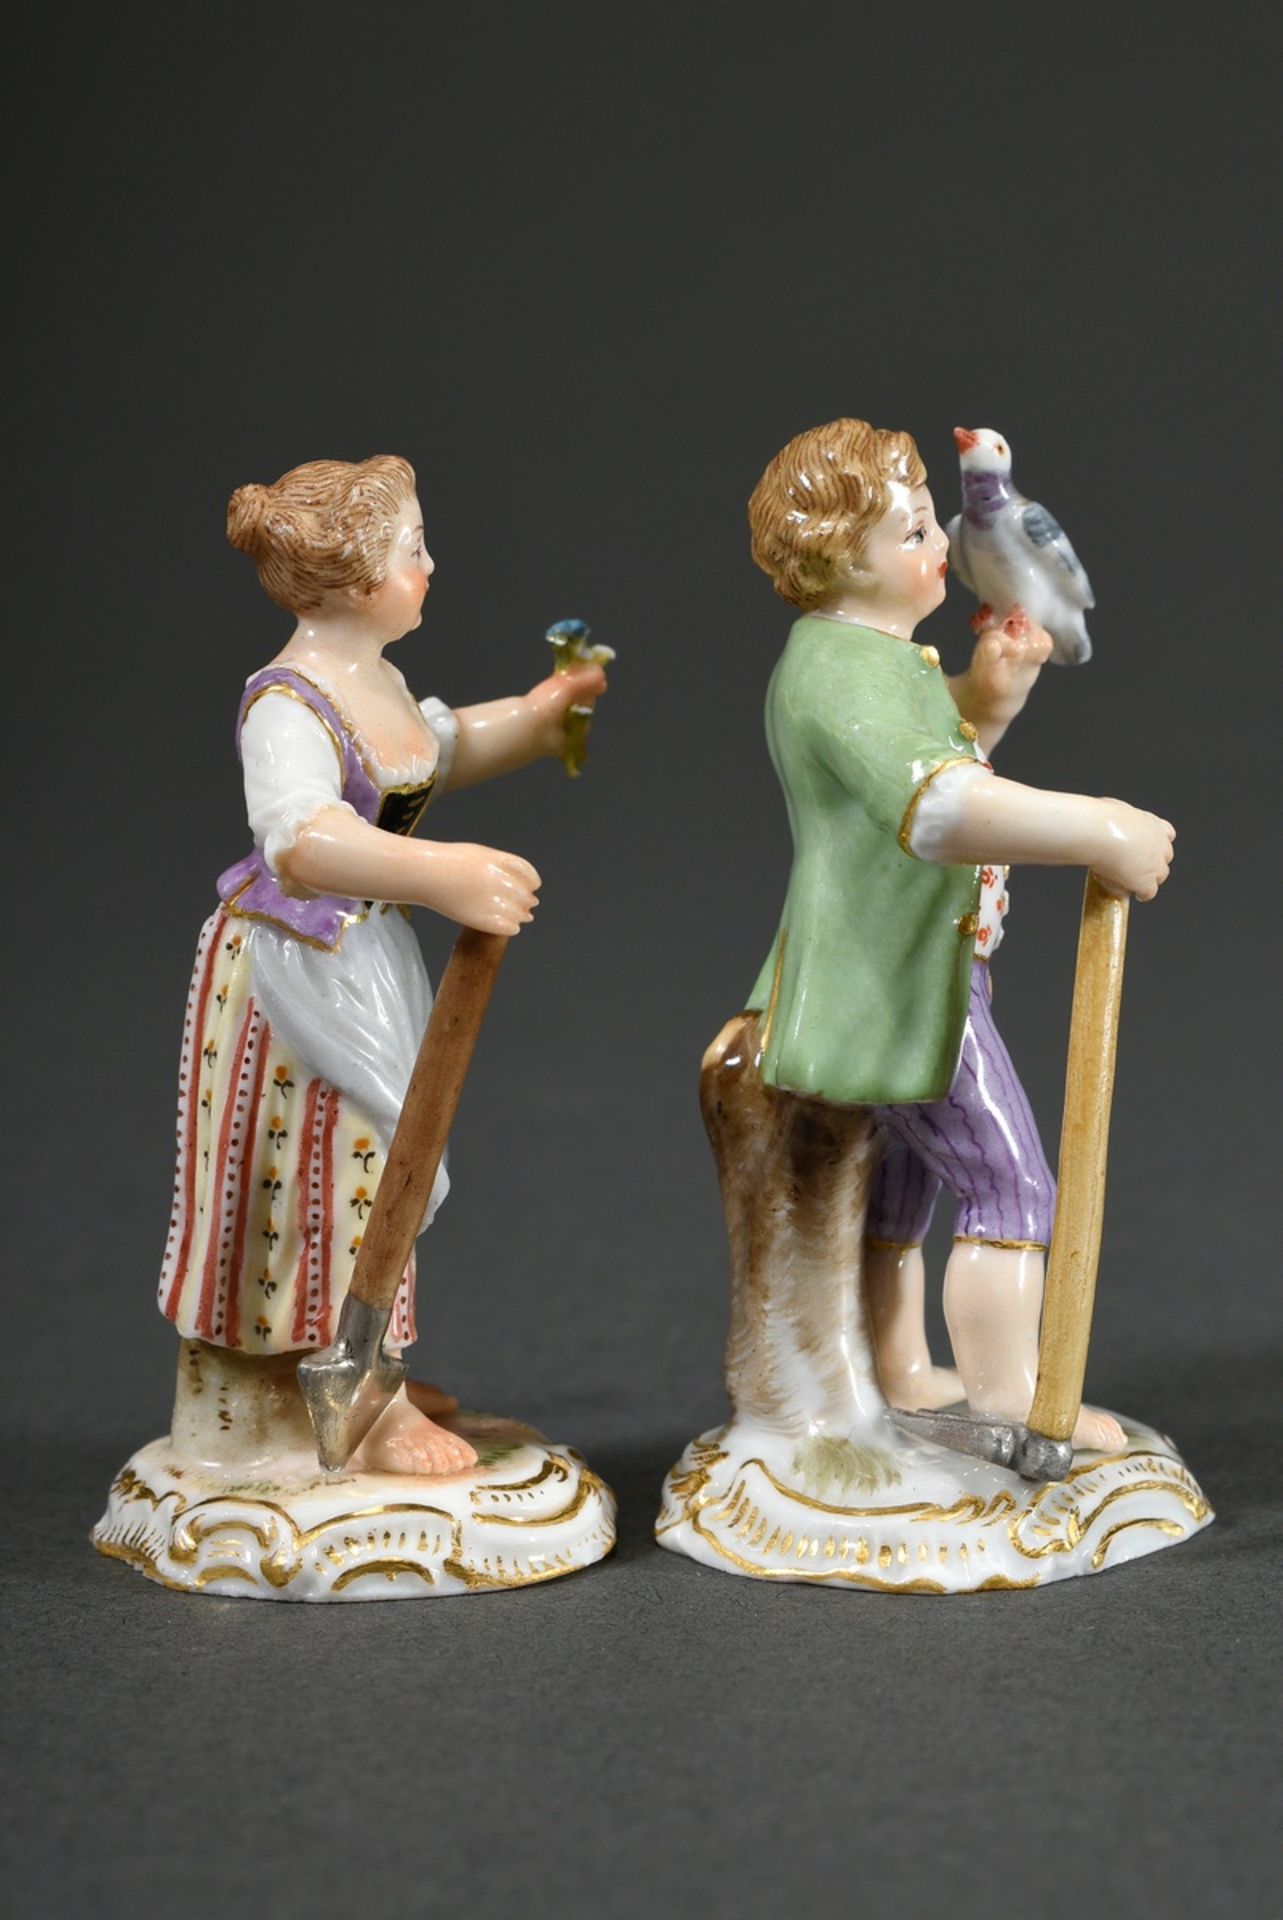 2 Meissen Miniatur Figuren "Gärtnerkinder" auf Rocaillesockel stehend, mit den Attributen von Gärtn - Bild 3 aus 6